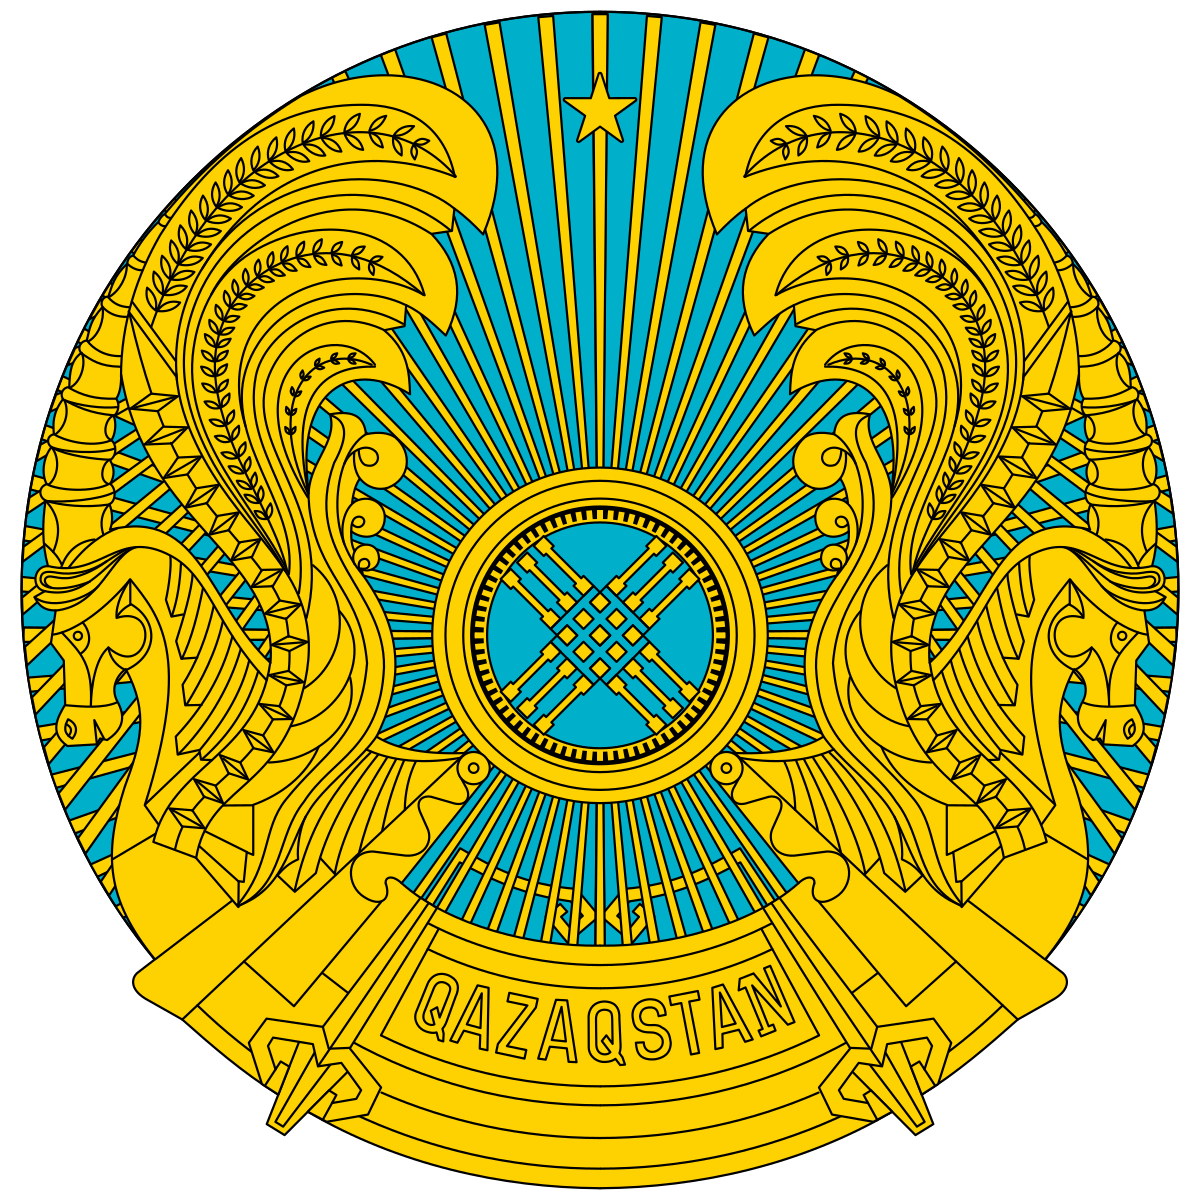 Coat of arms of Kazakhstan